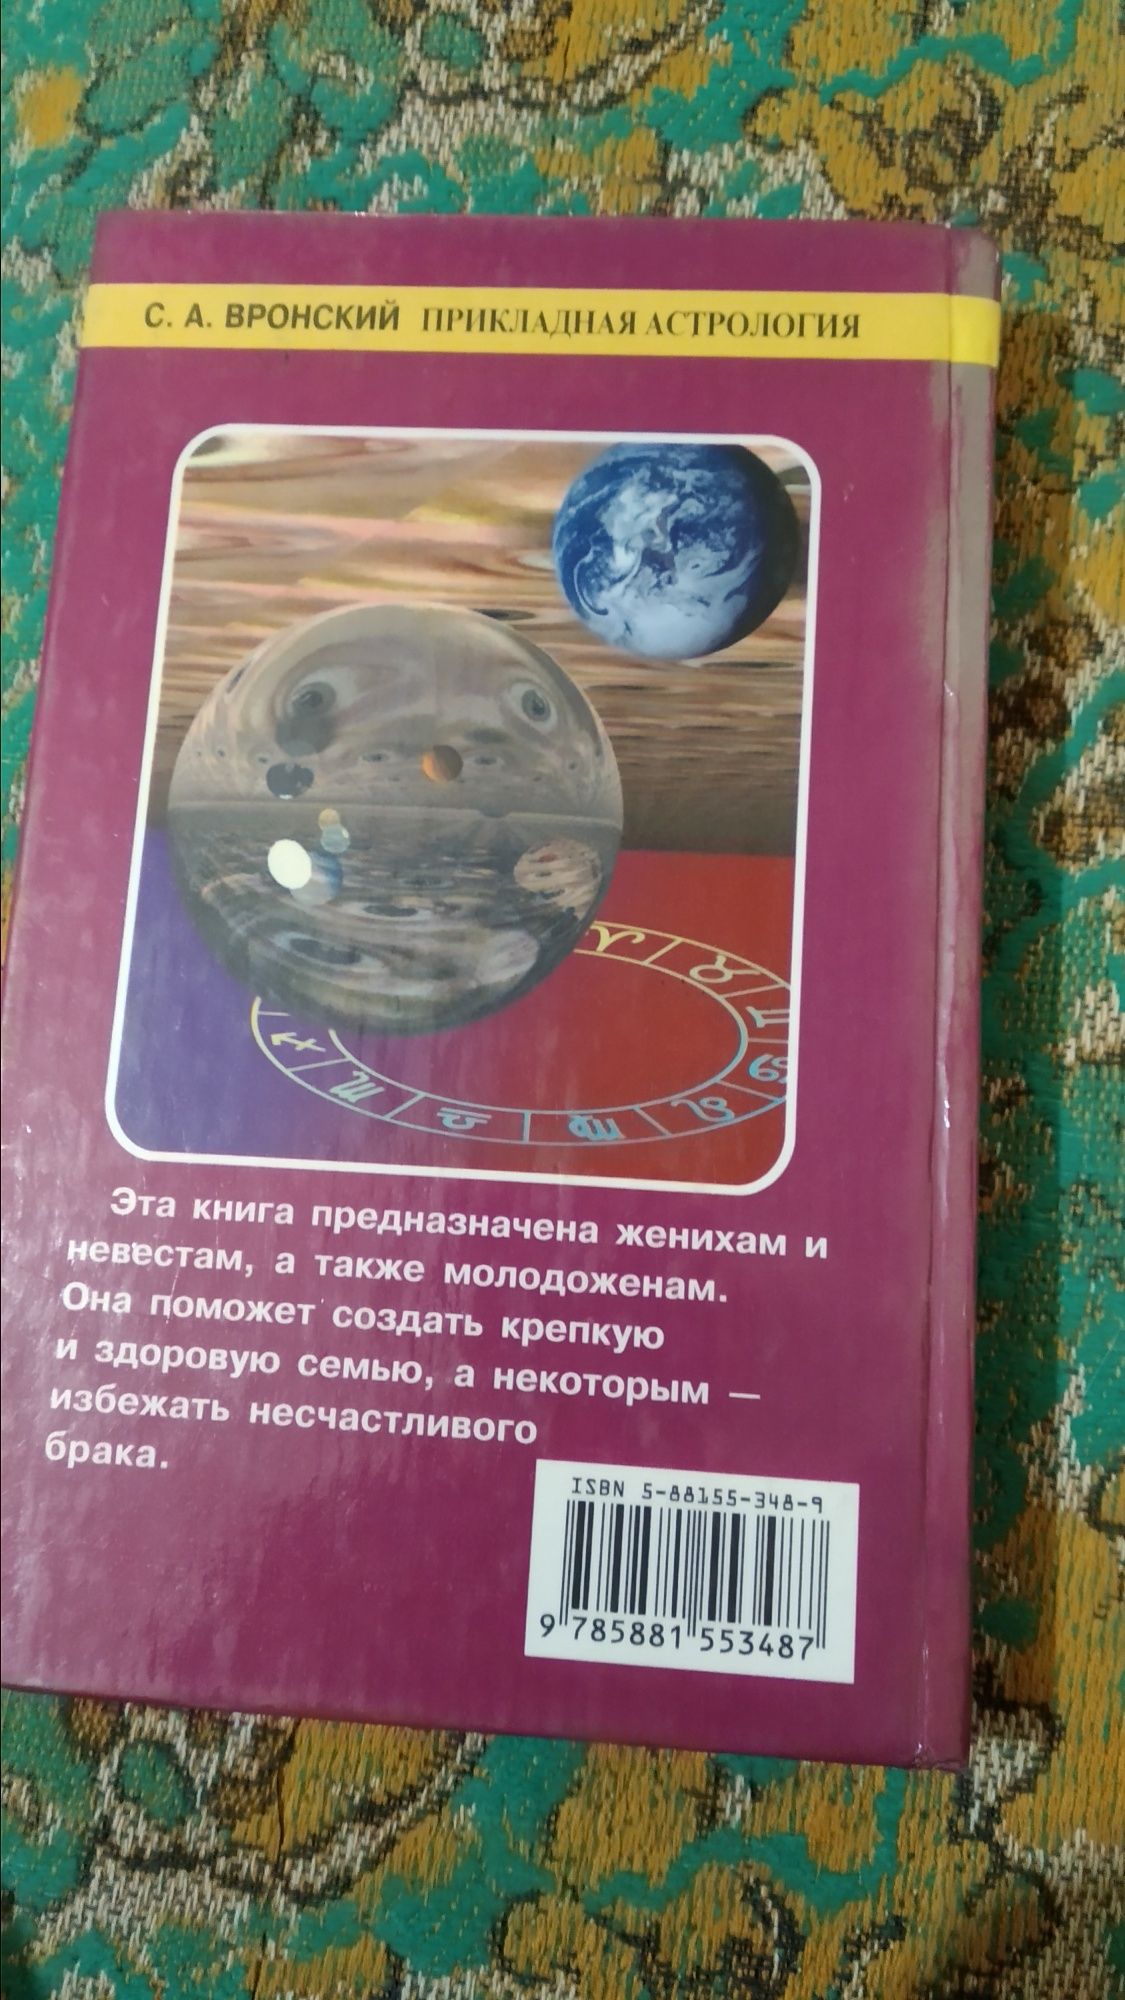 Прикладная астрология С. Вронский